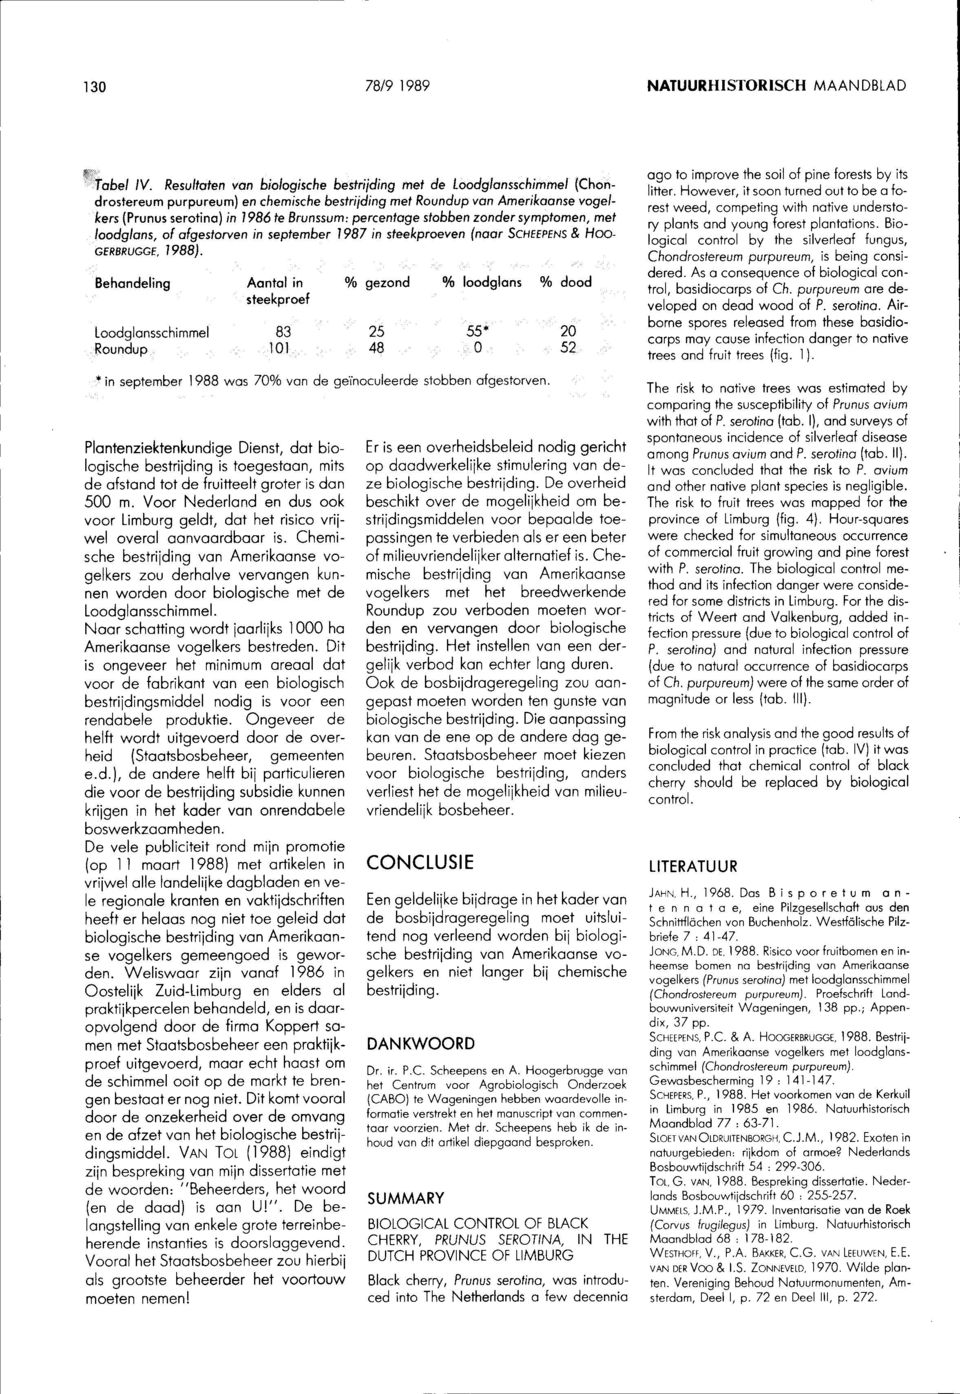 percentage stobben zonder symptomen, met loodglans, of afgestorven in september 1987 in steekproeven (naar SCHEEPENS & HOO GERBRUGGE, 1988).